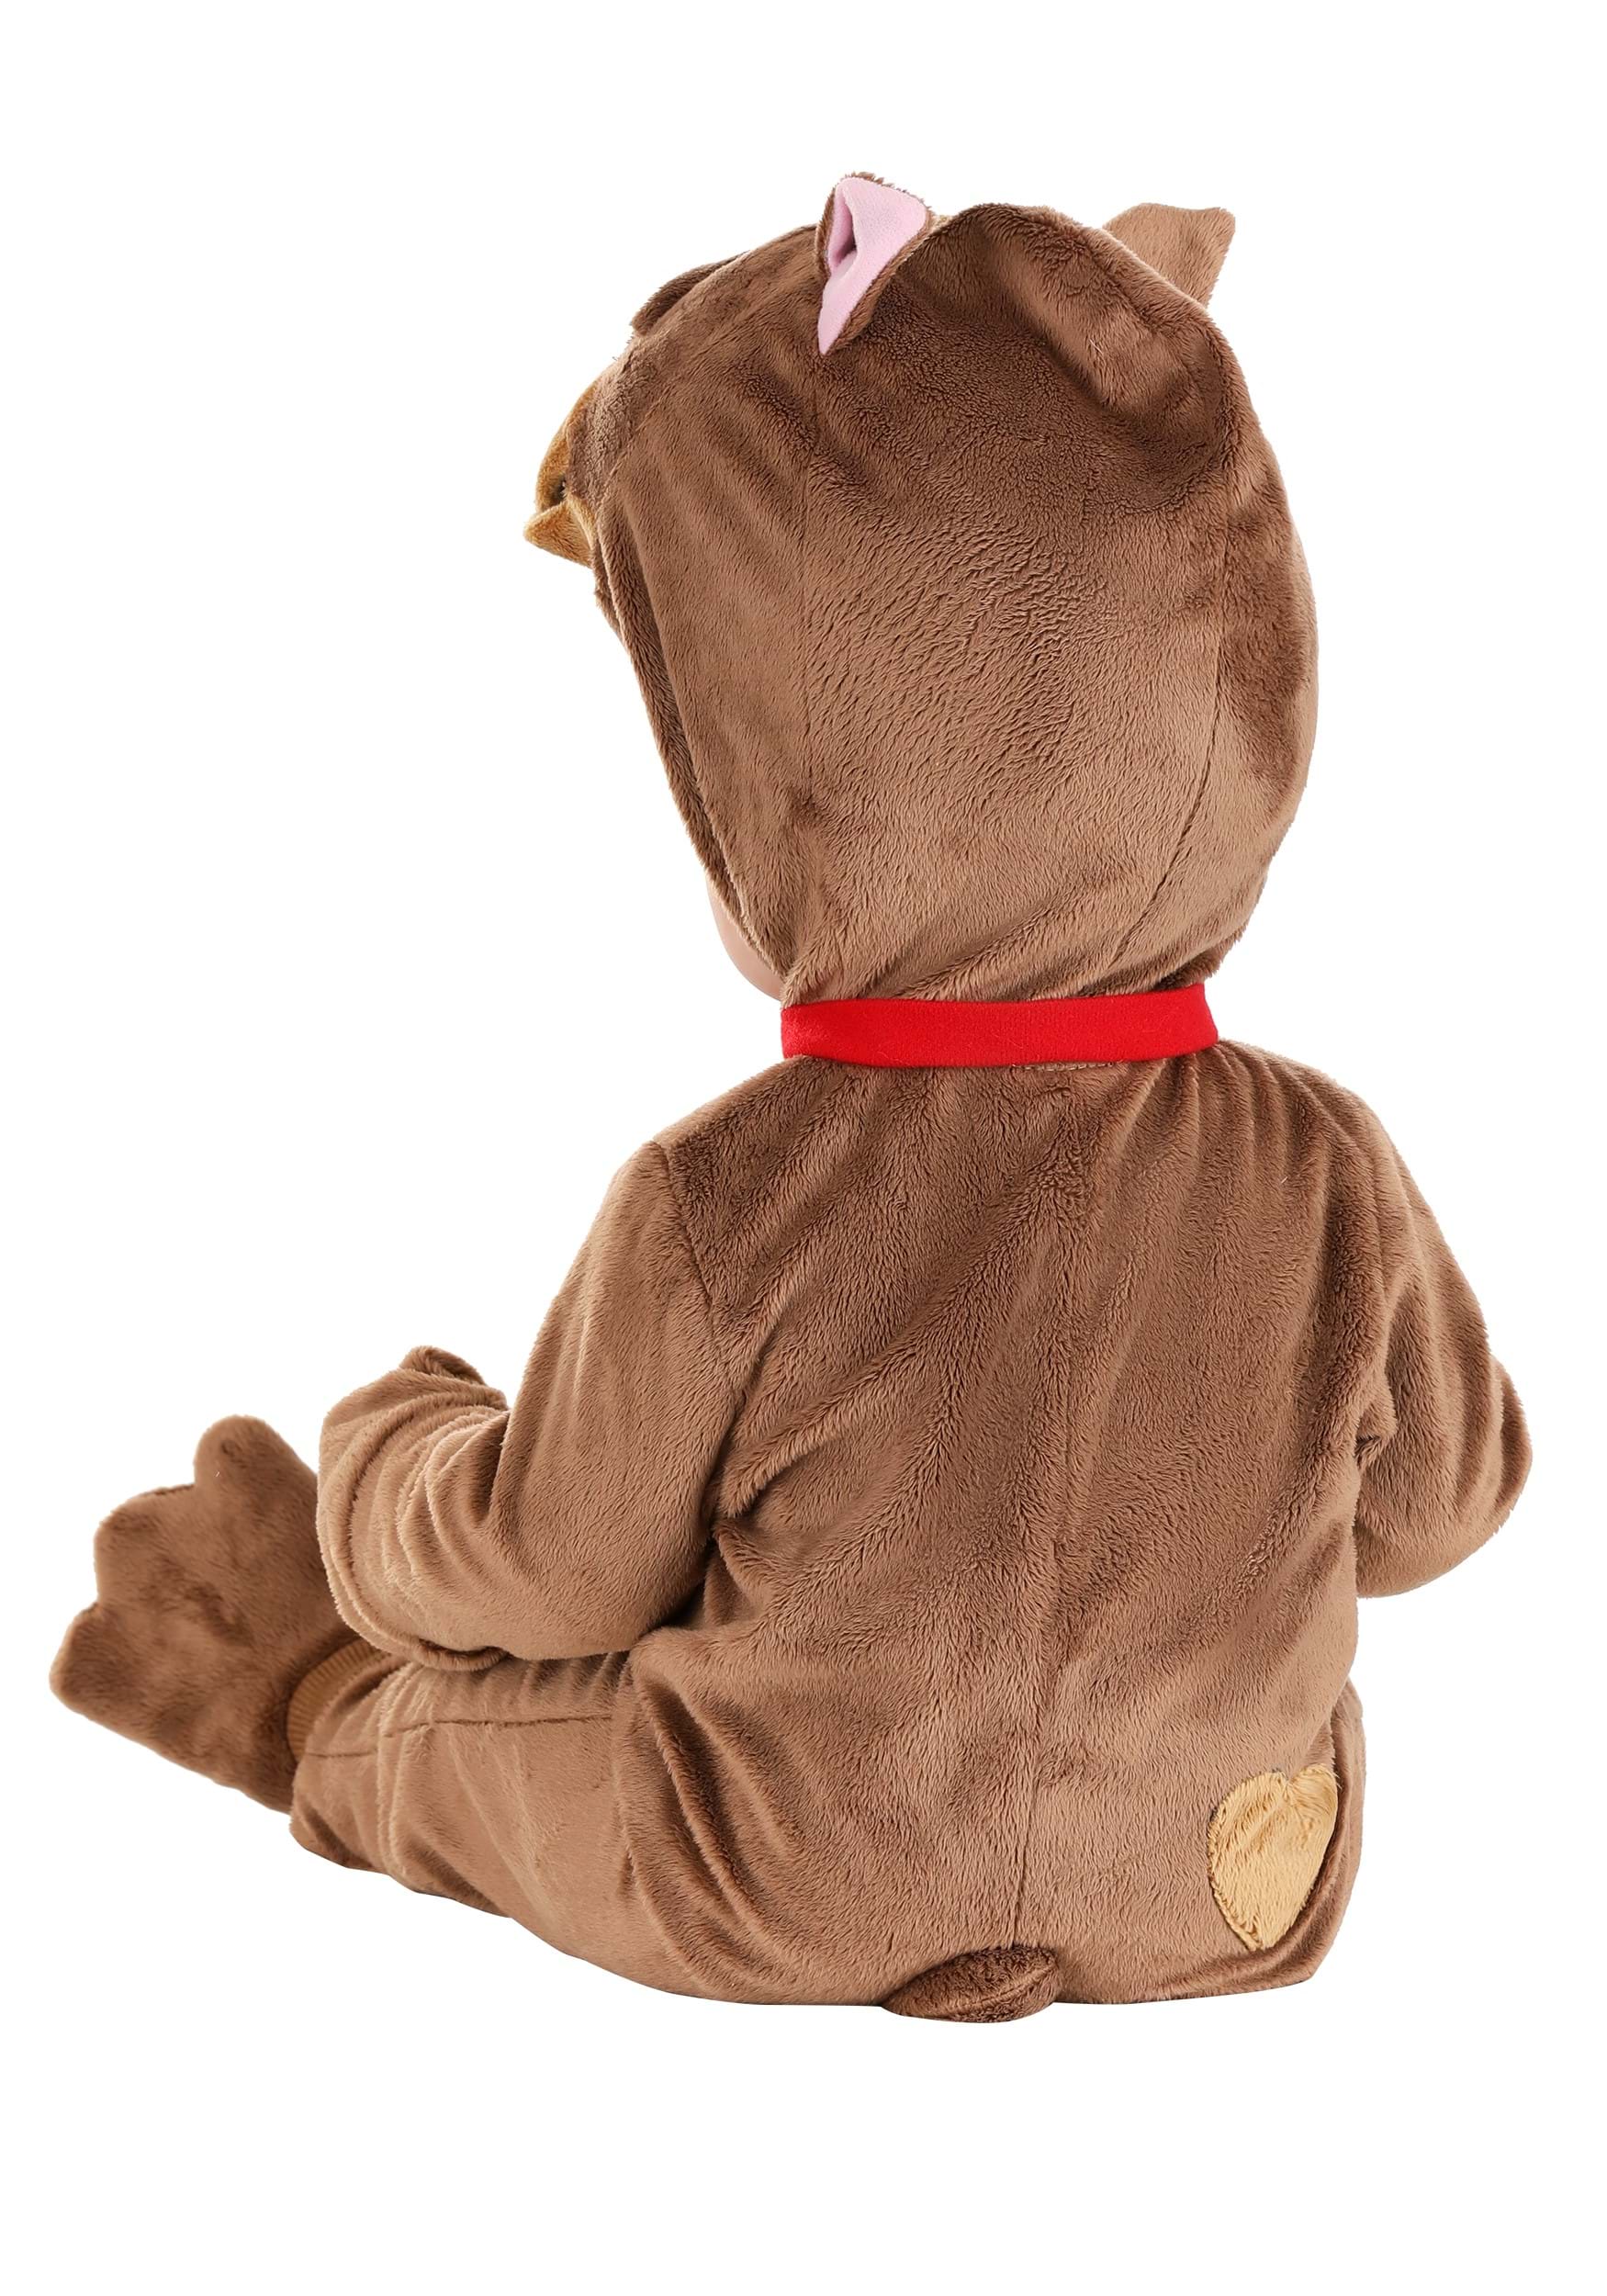 Baby Bulldog Costume